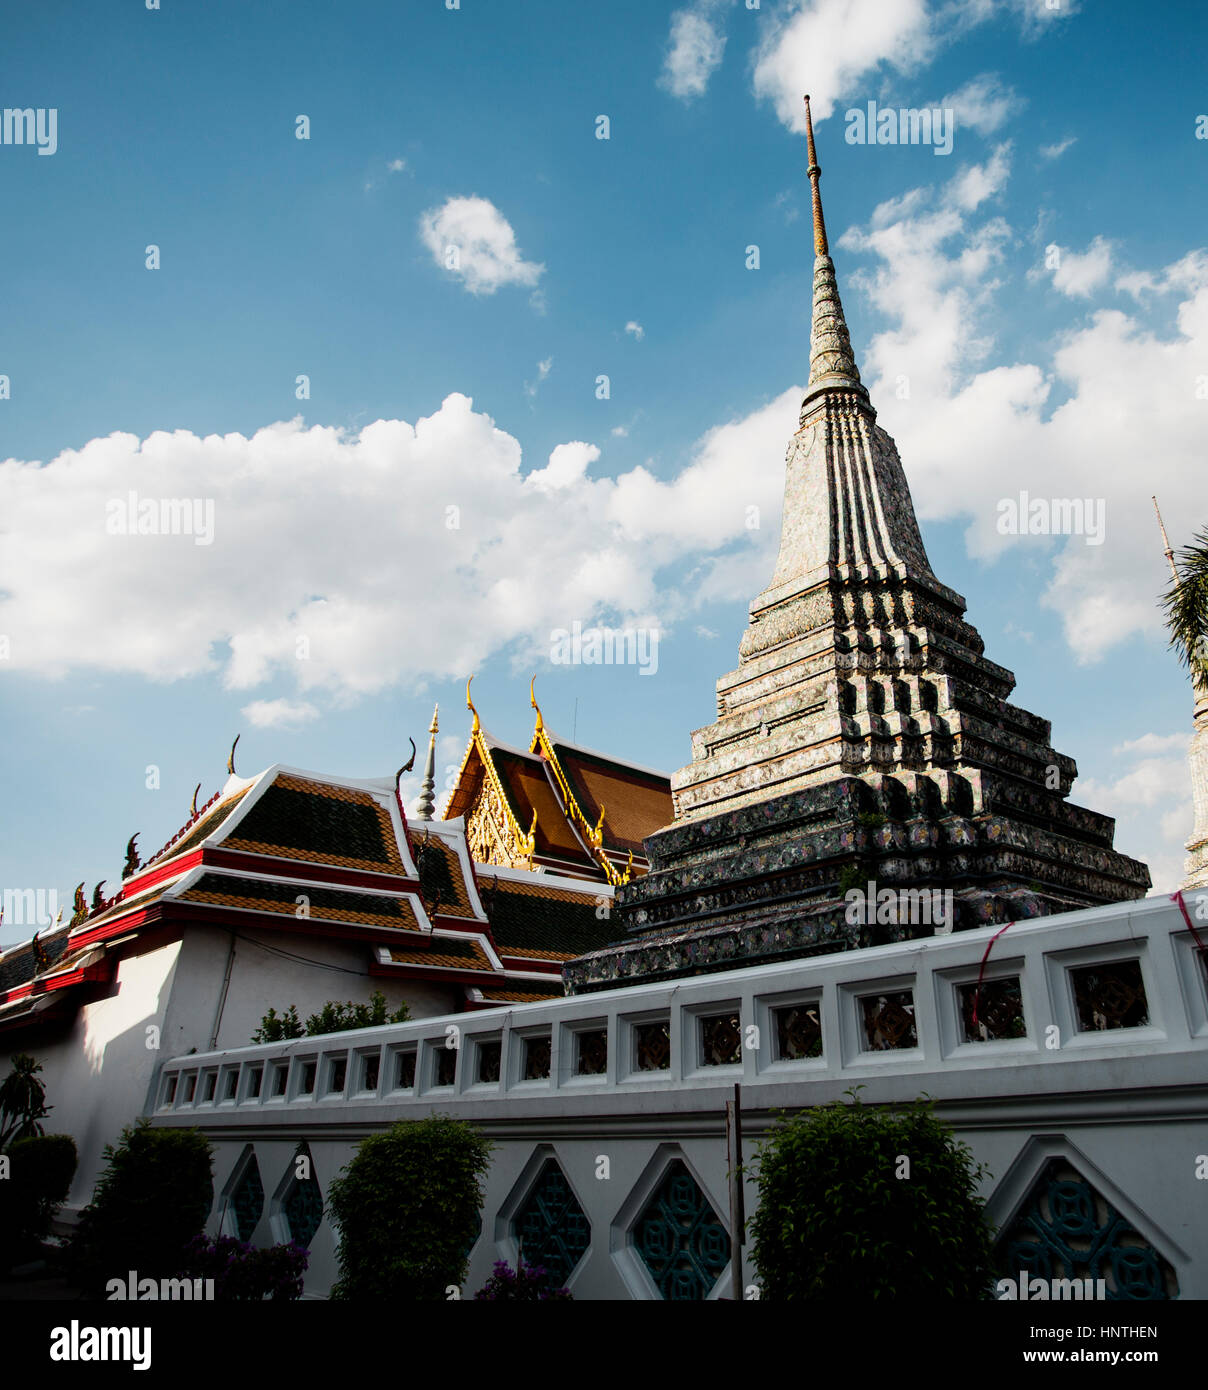 Asiatische Tempel Buddhismus Heiligkeit Architekturkonzept Stockfoto